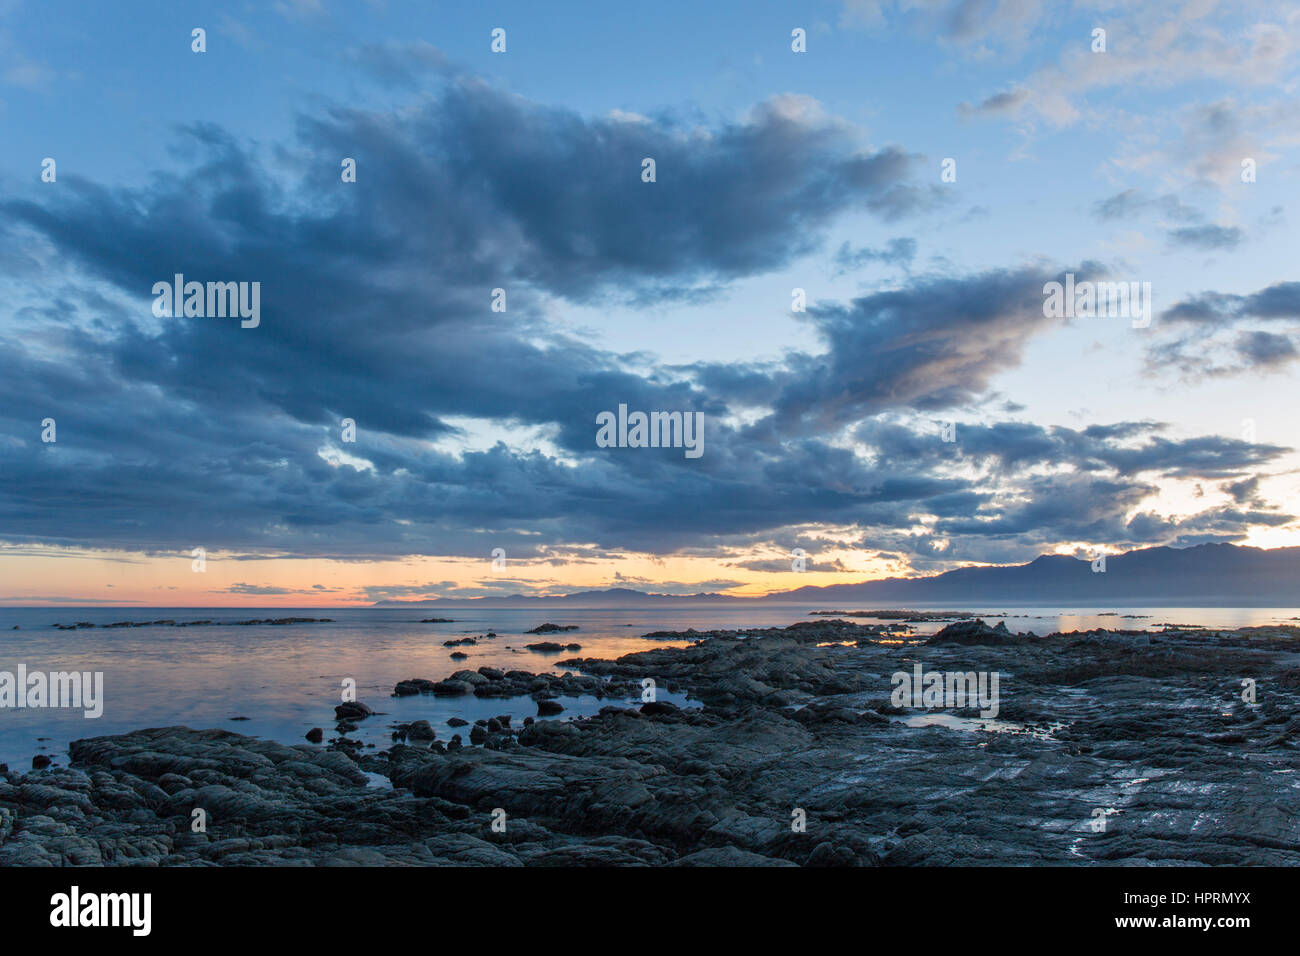 Kaikoura, Canterbury, New Zealand. View across South Bay from rocky shoreline at dusk. Stock Photo